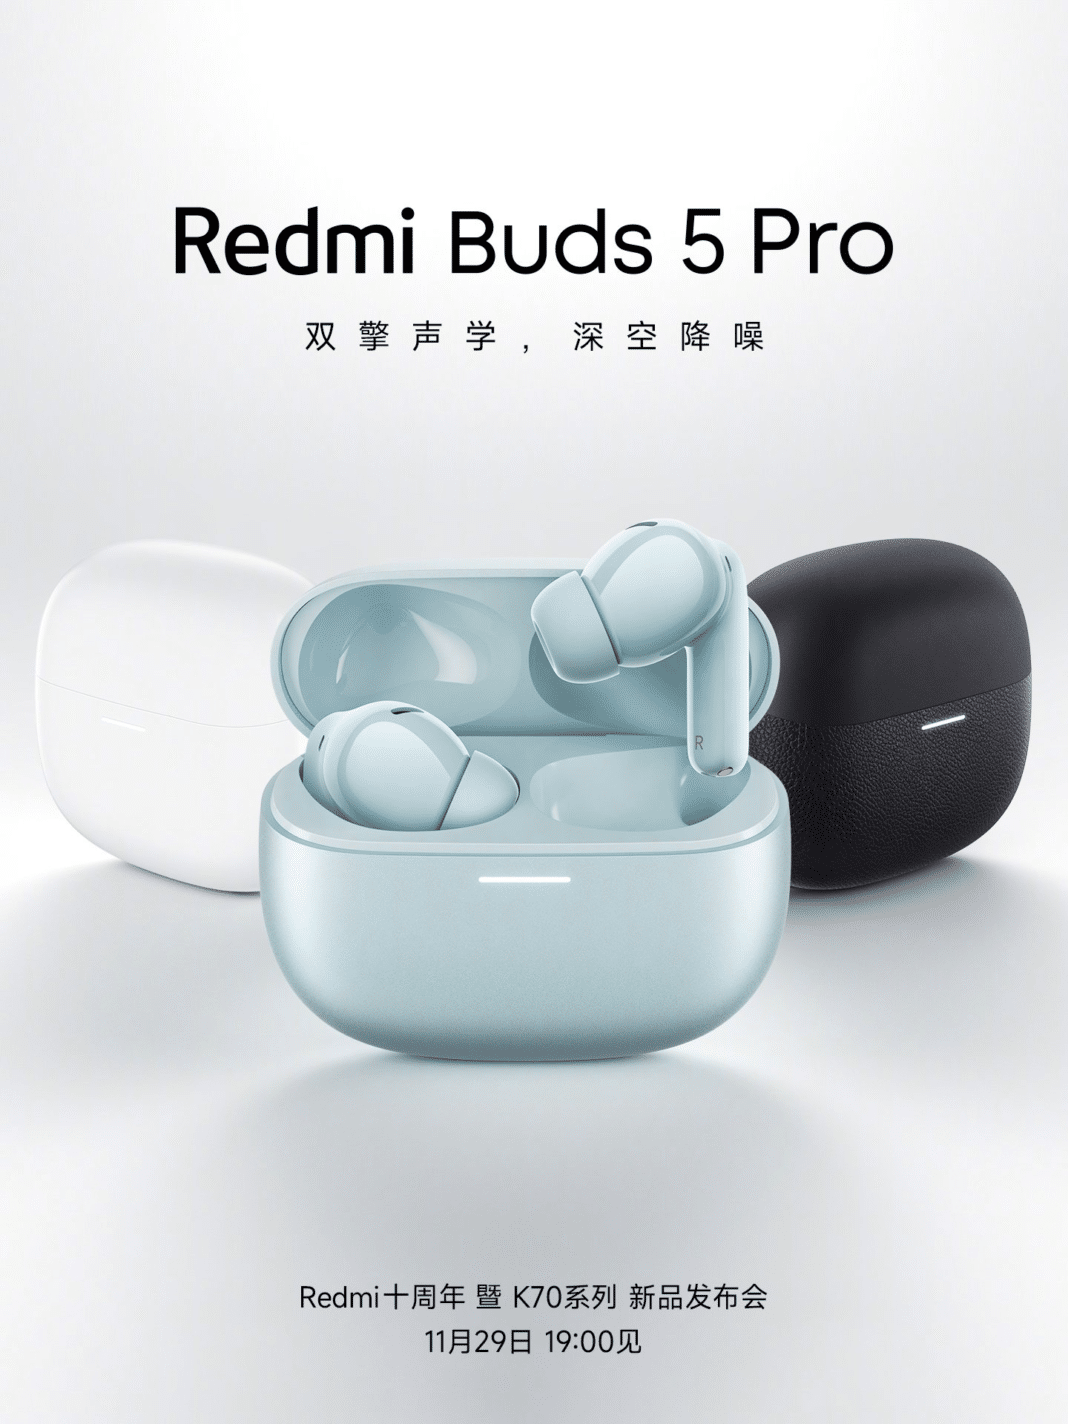 ¡Descubre los nuevos Redmi Buds 5 Pro! La mejor alternativa en auriculares